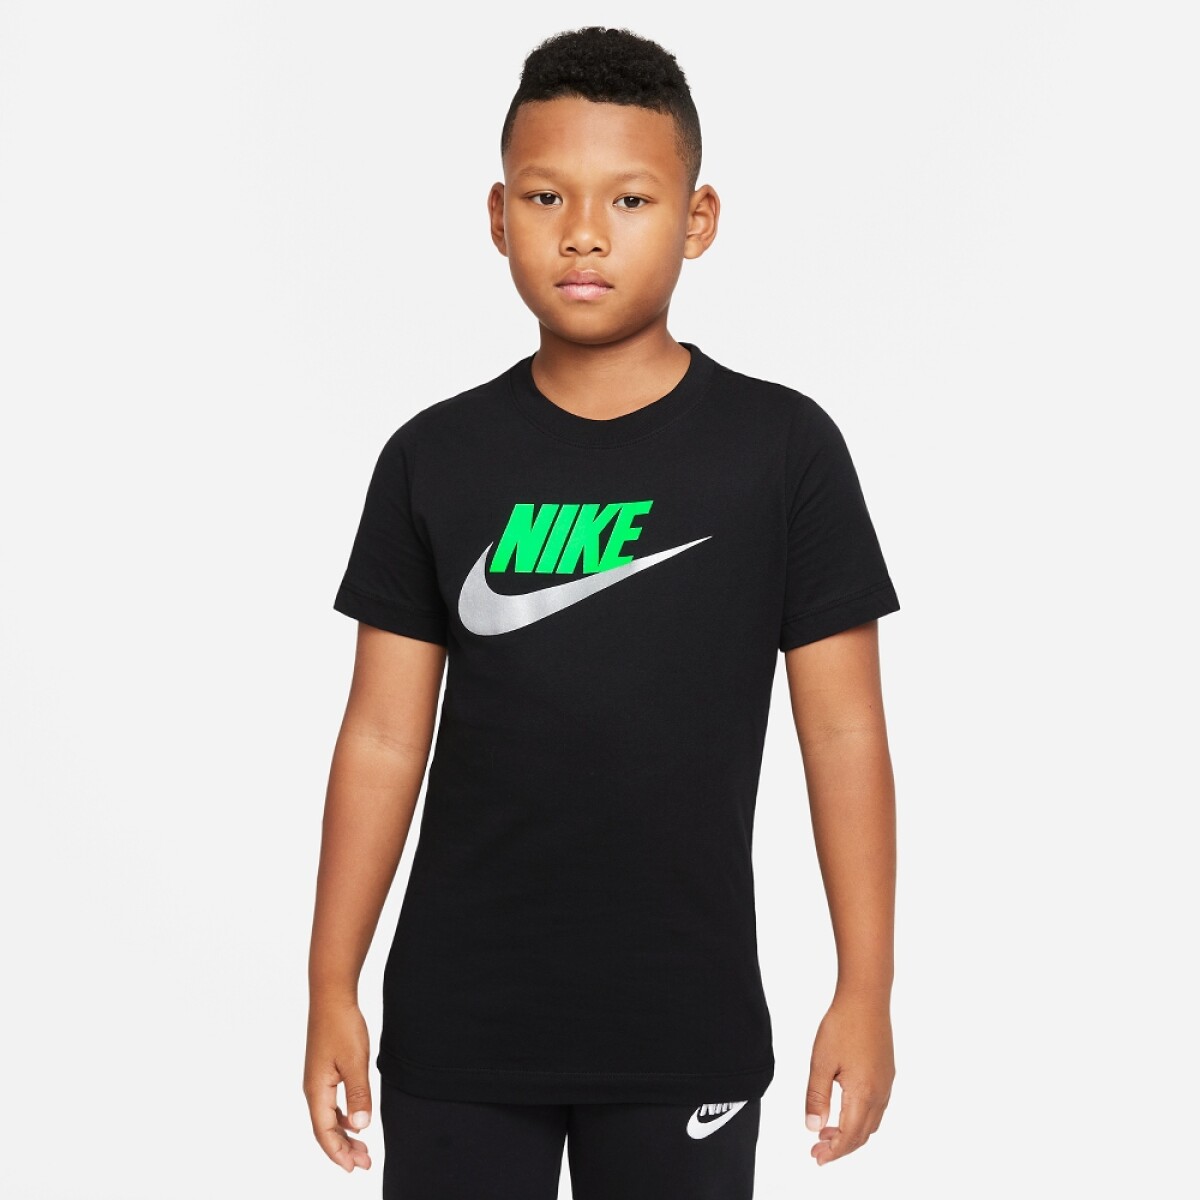 Remera Nike Moda Niño Tee Futura - S/C 